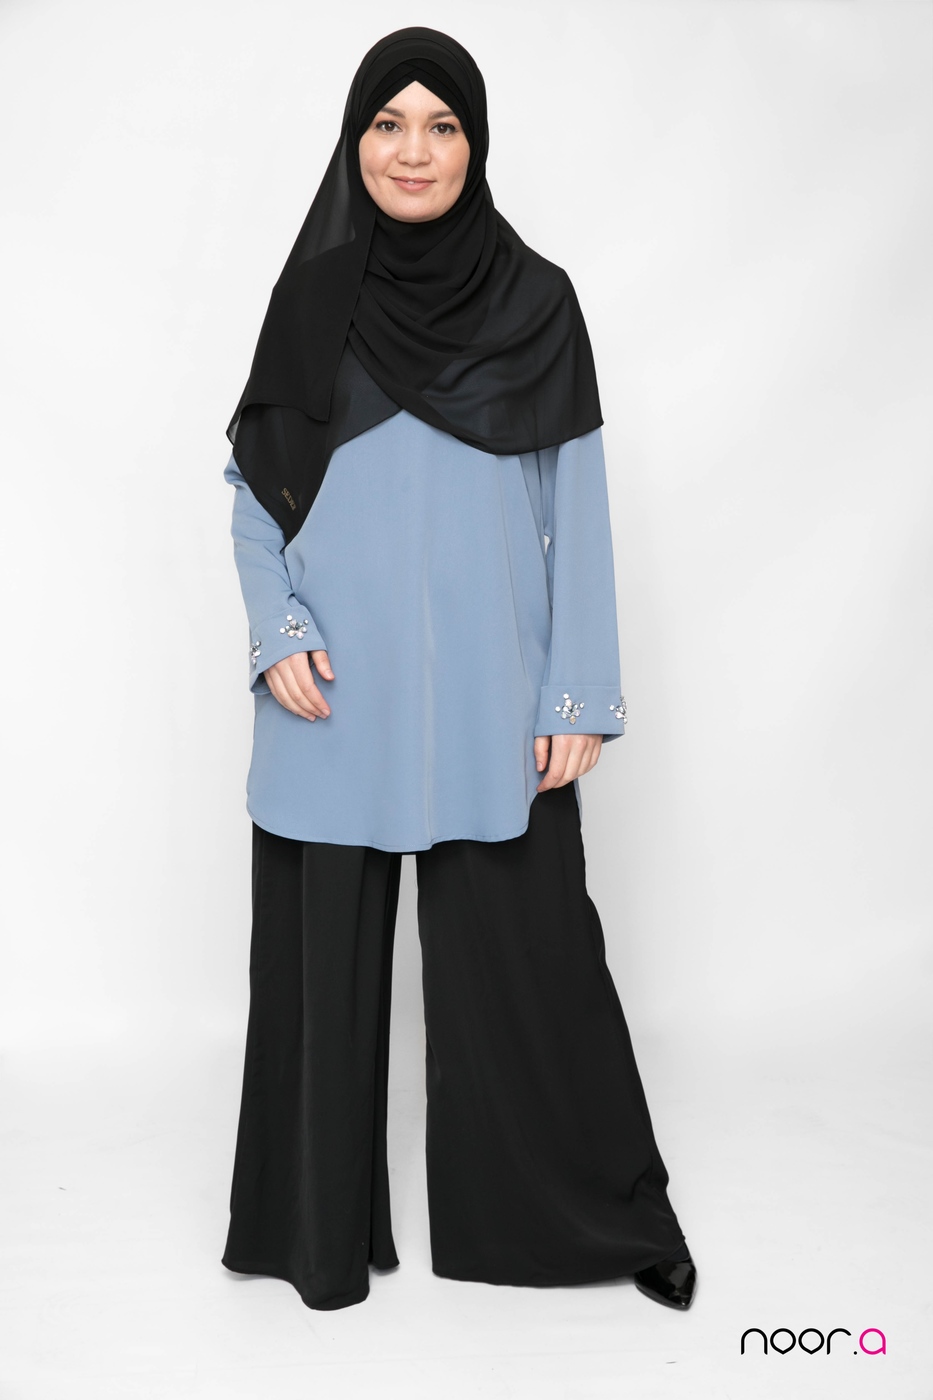 pantalon-large-pour-hijab-noir-fluide-tunique-bijoux-bleu-acier-hijab-mousseline-de-luxe-noir